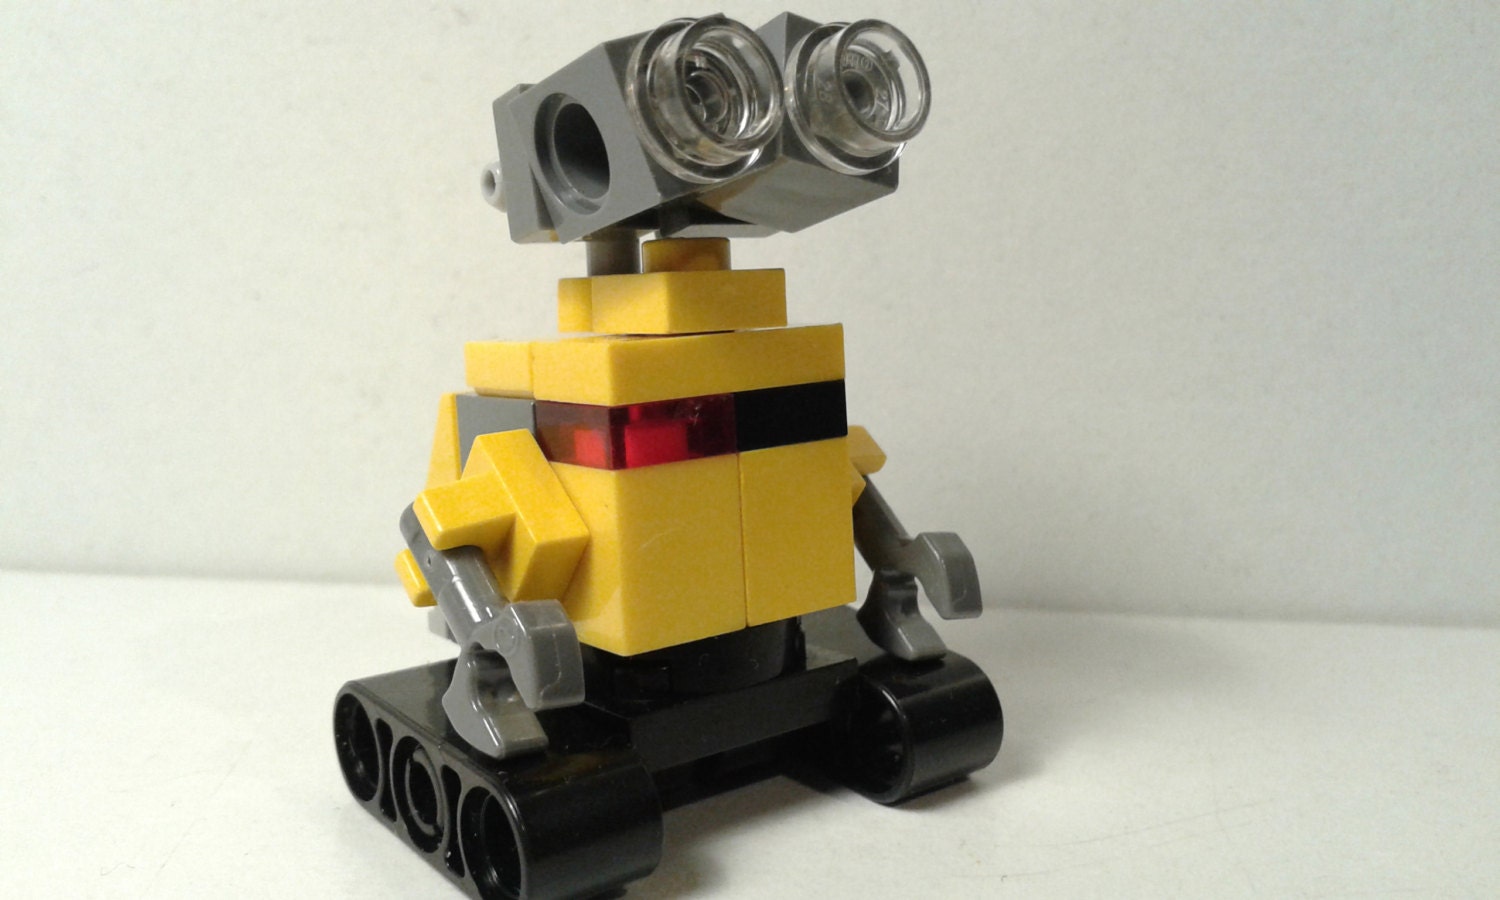 Betydelig Ekspert lommelygter Lego Wall-e - Etsy